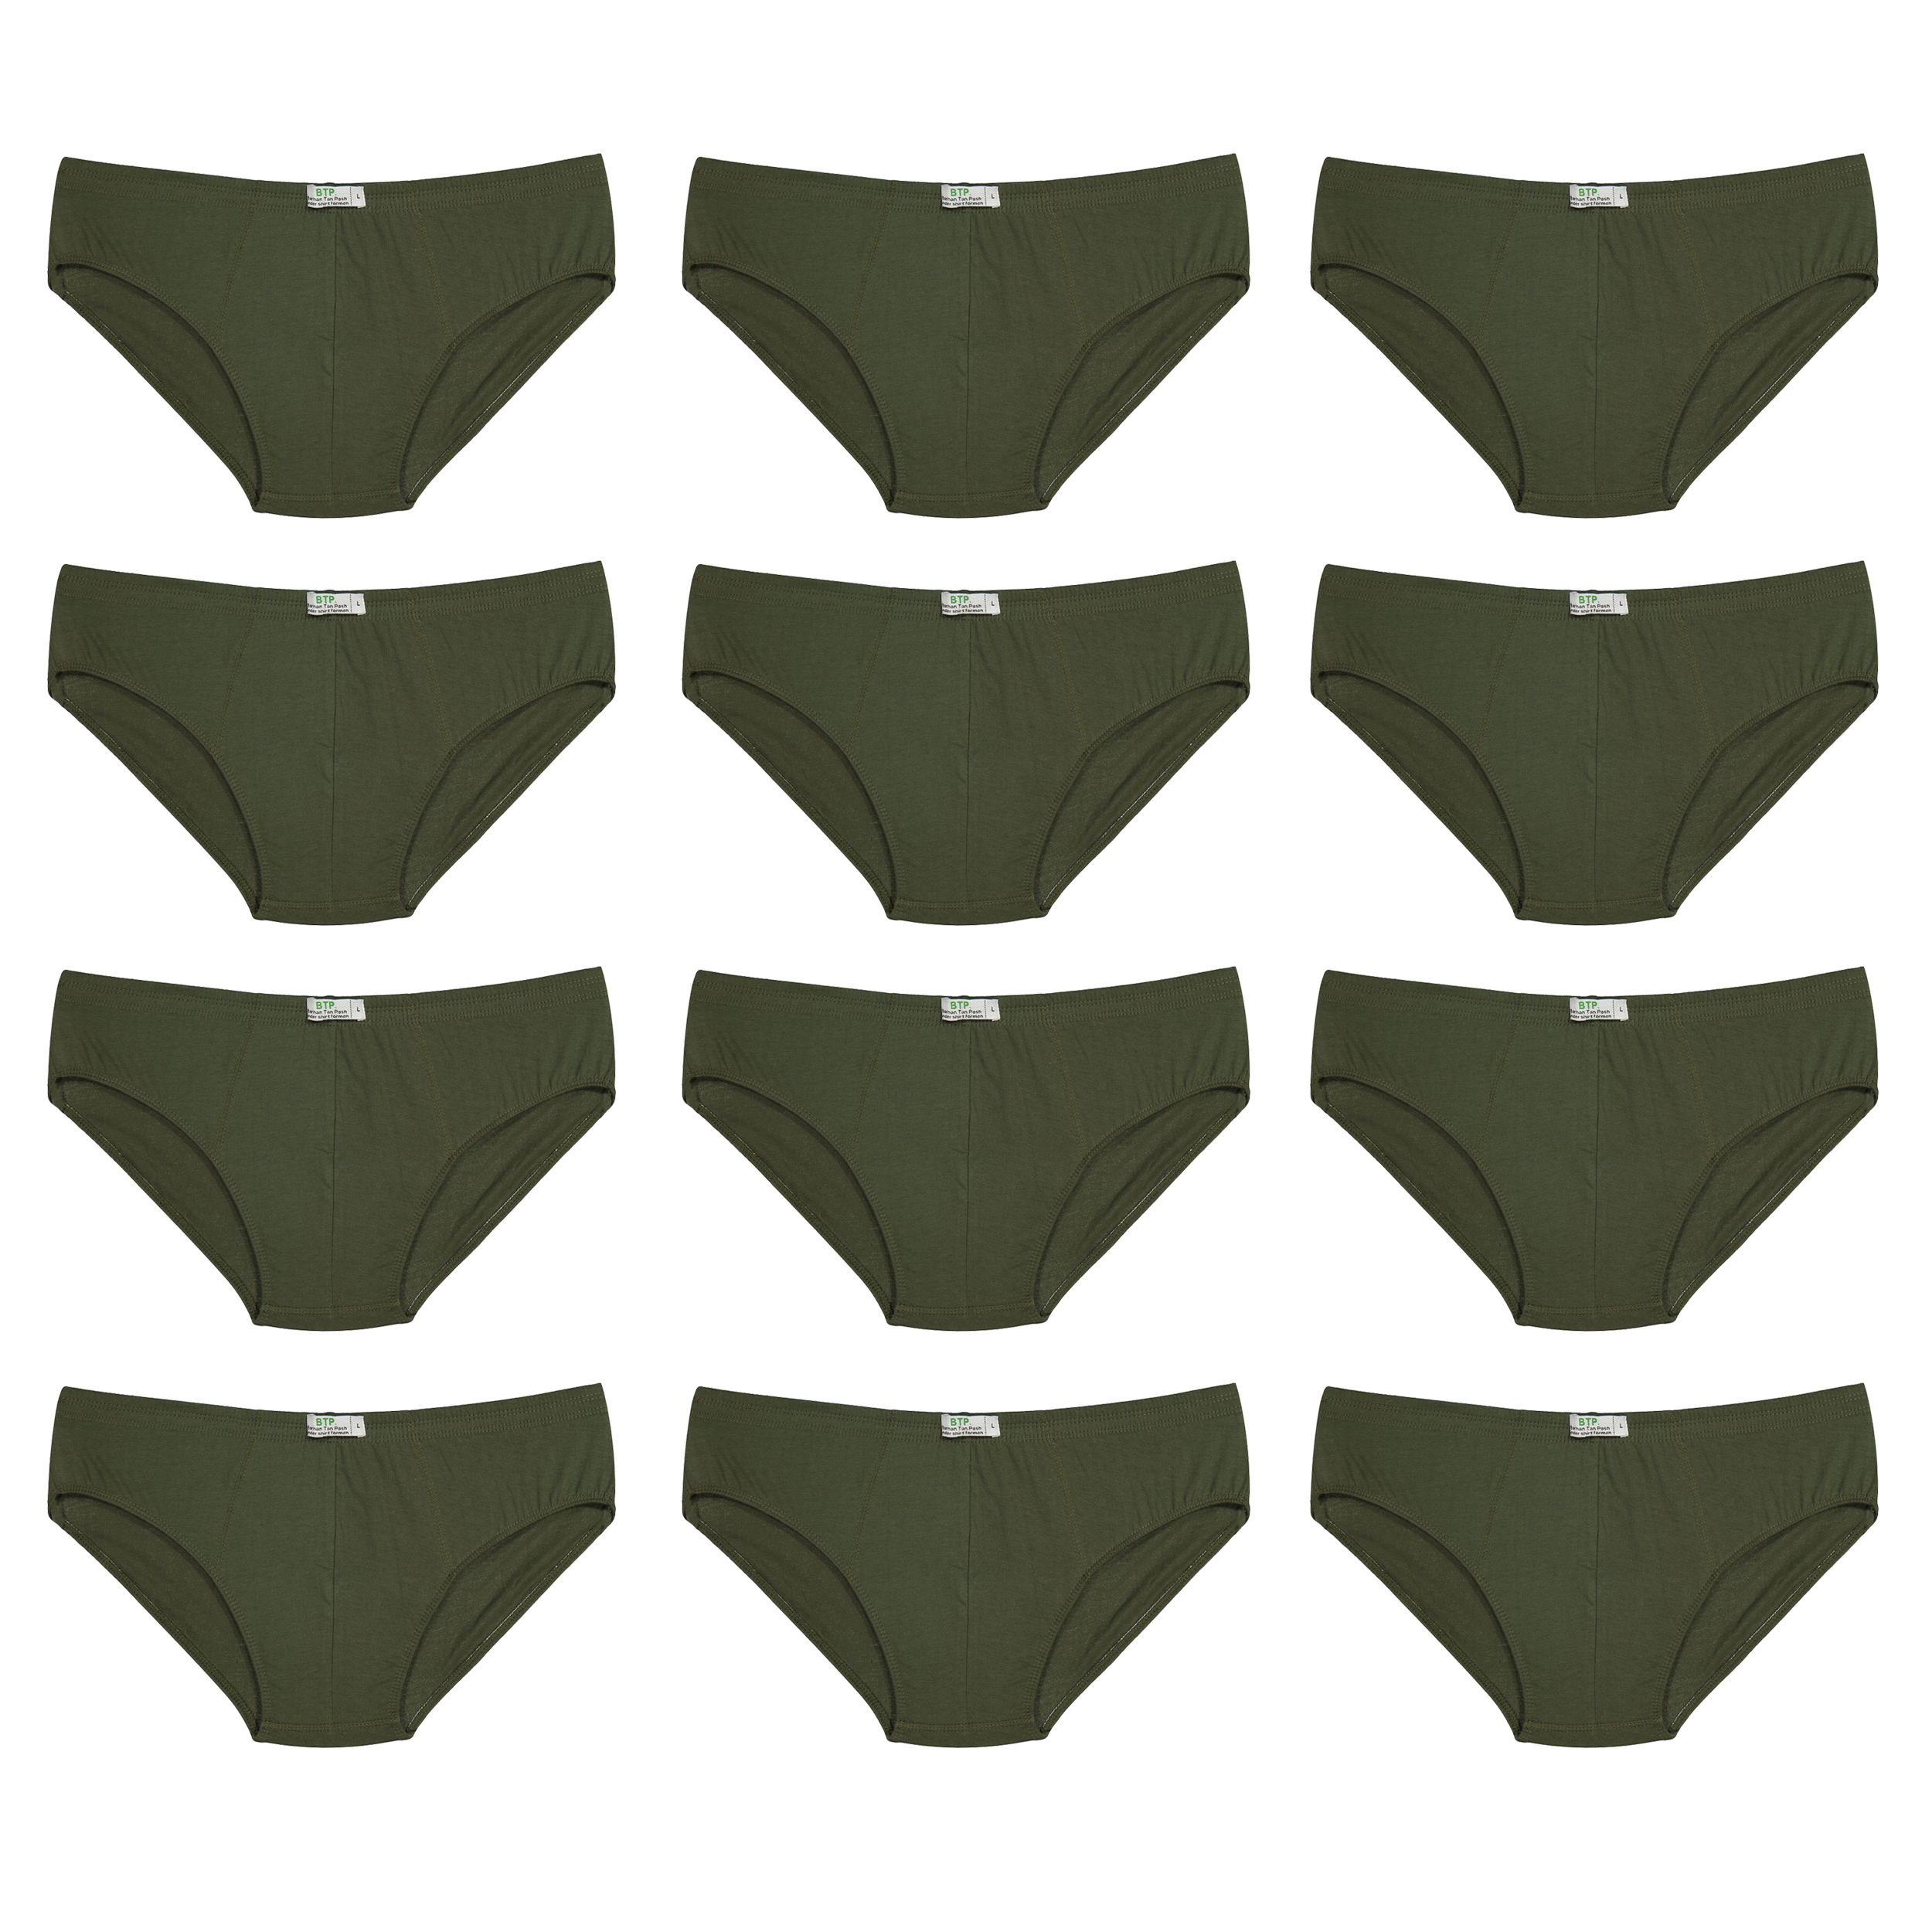 شورت مردانه برهان تن پوش مدل اسلیپ 6-03 رنگ سبز بسته 12 عددی